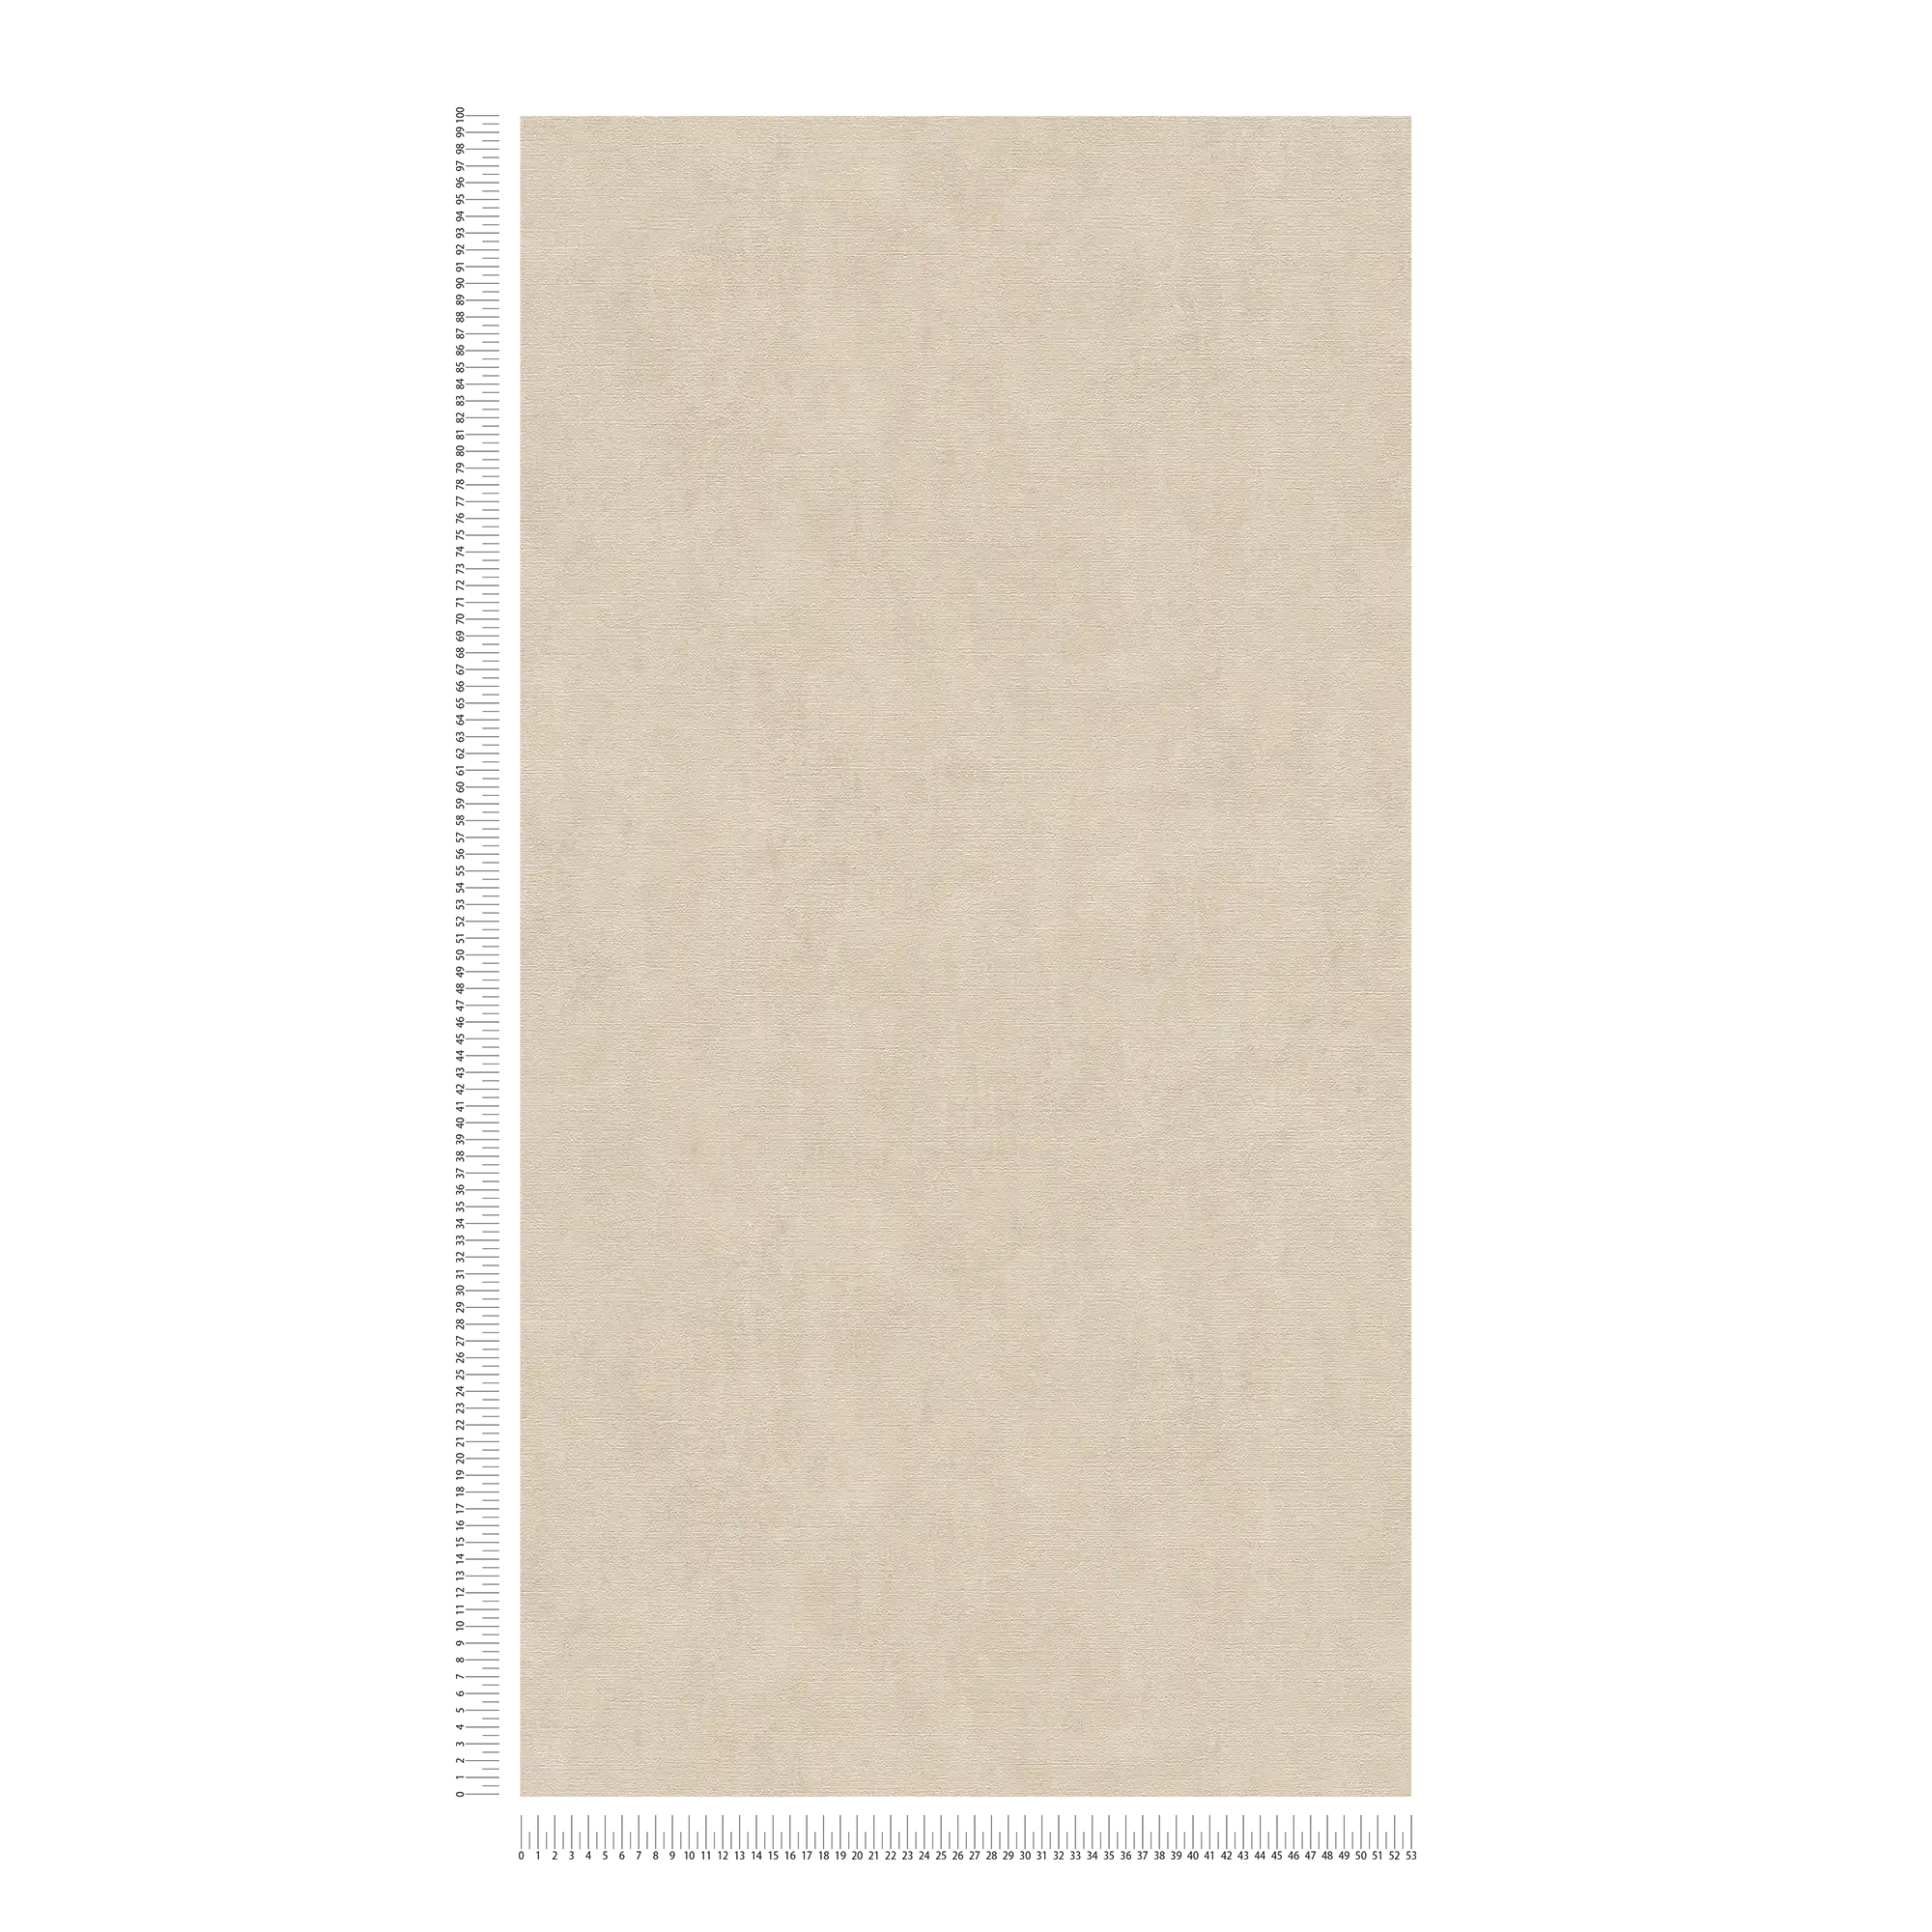             Papier peint Beige avec aspect crépi chiné style colonial
        